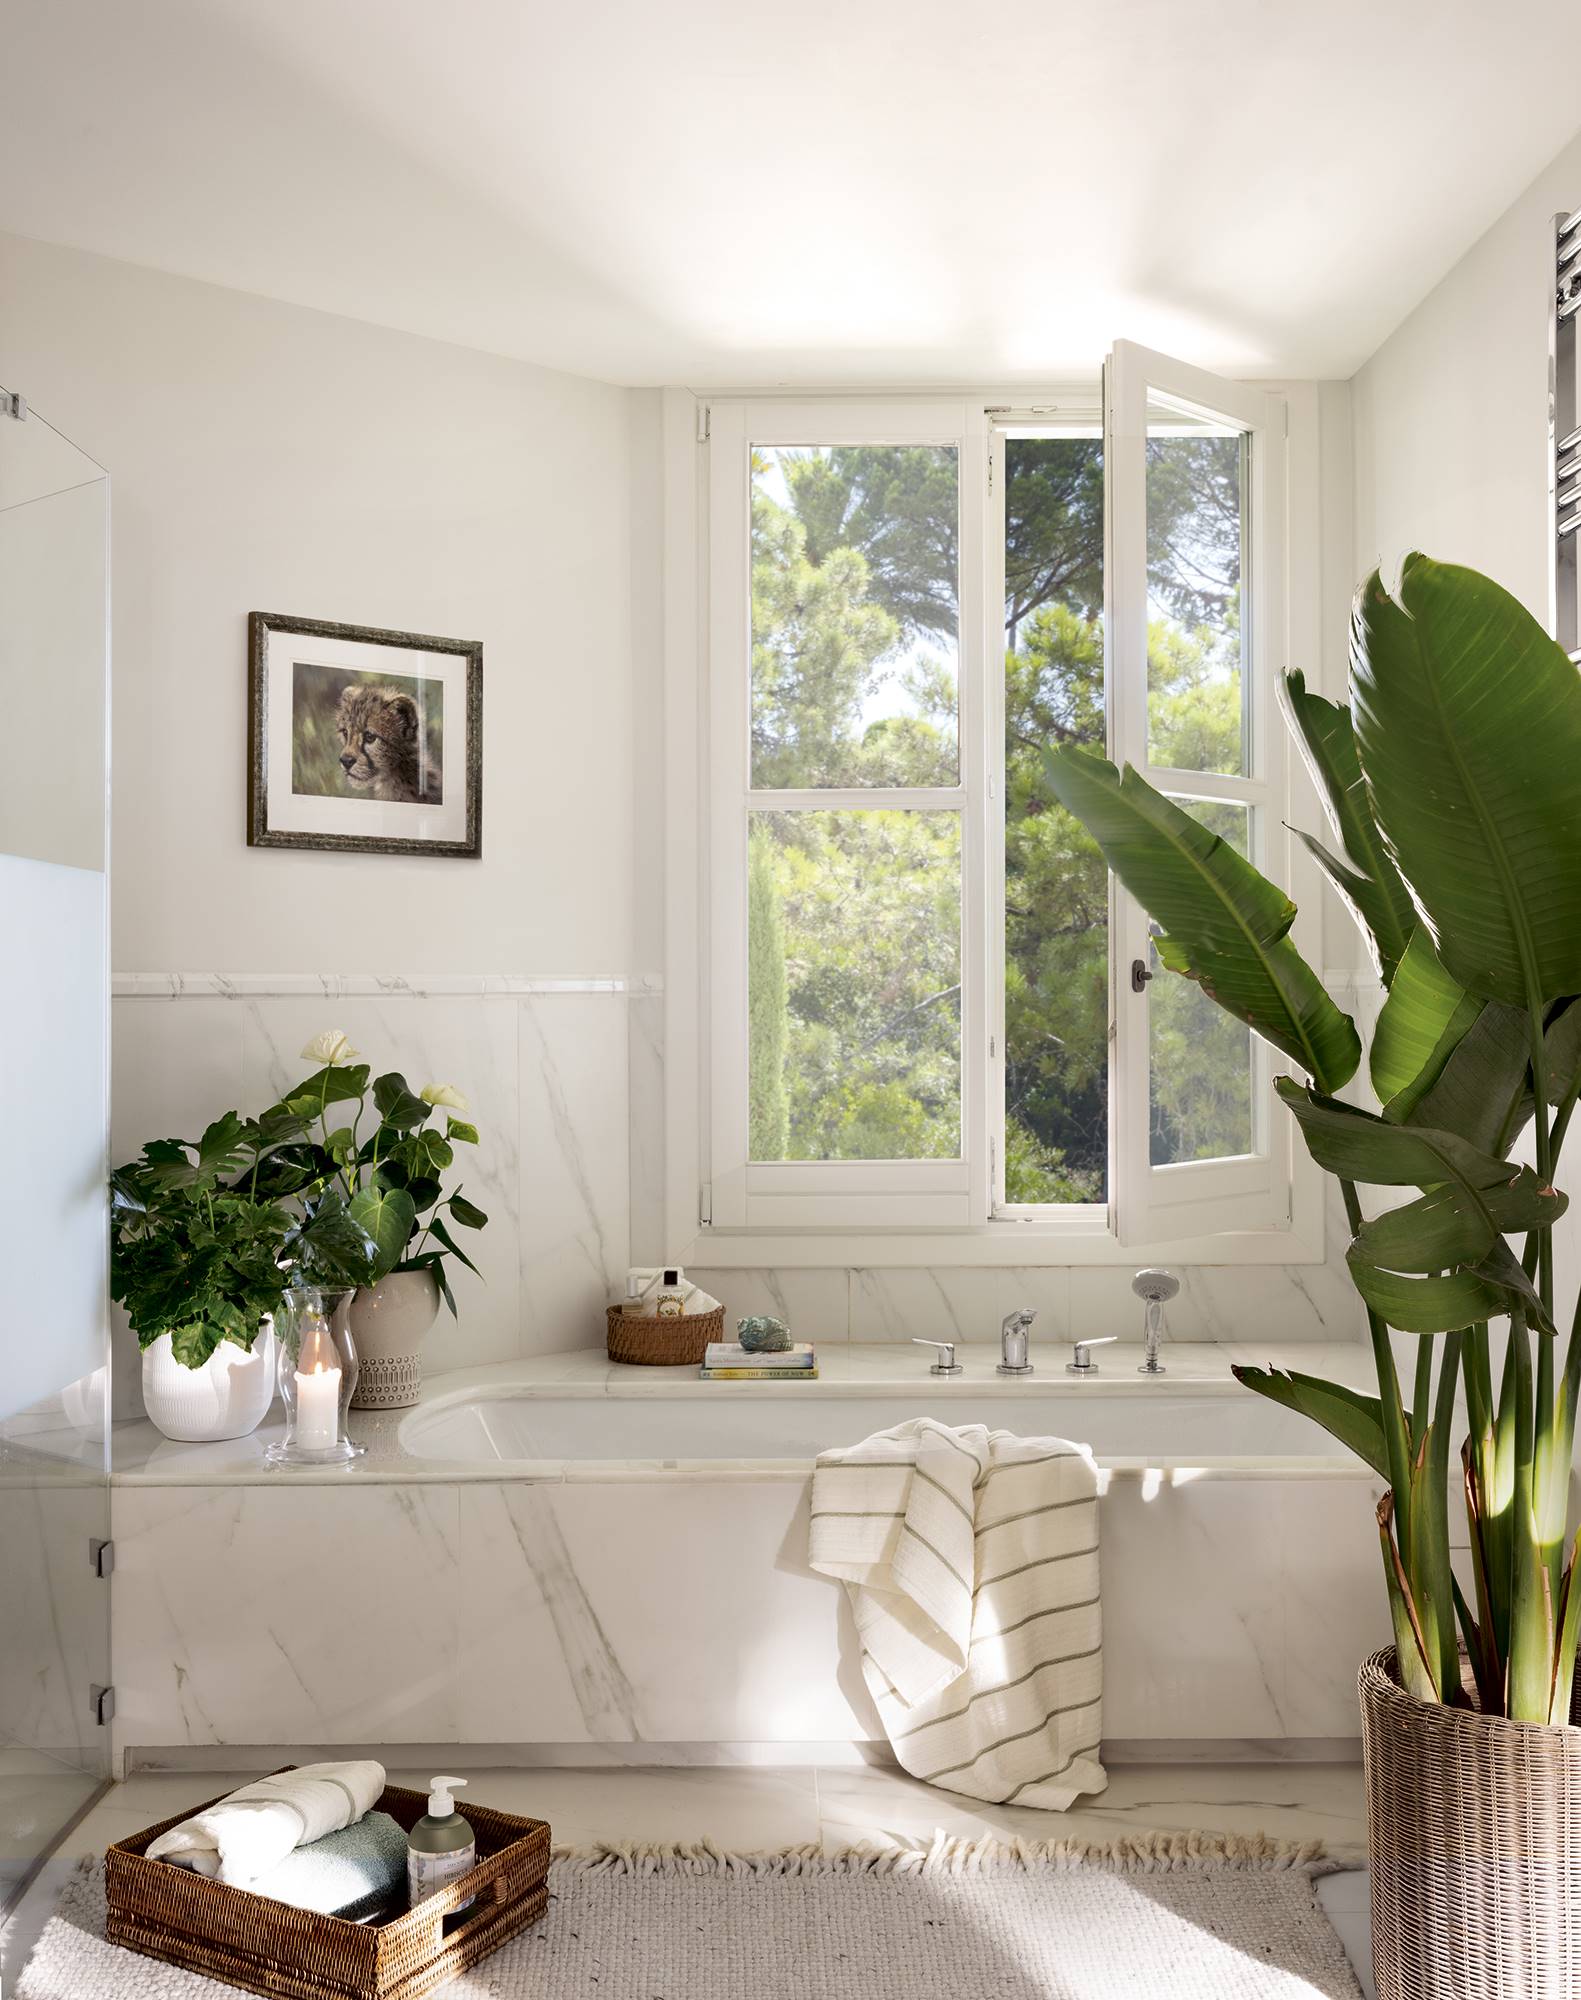 Baño con bañera revestida de mármol, plantas de interior y ventana. 